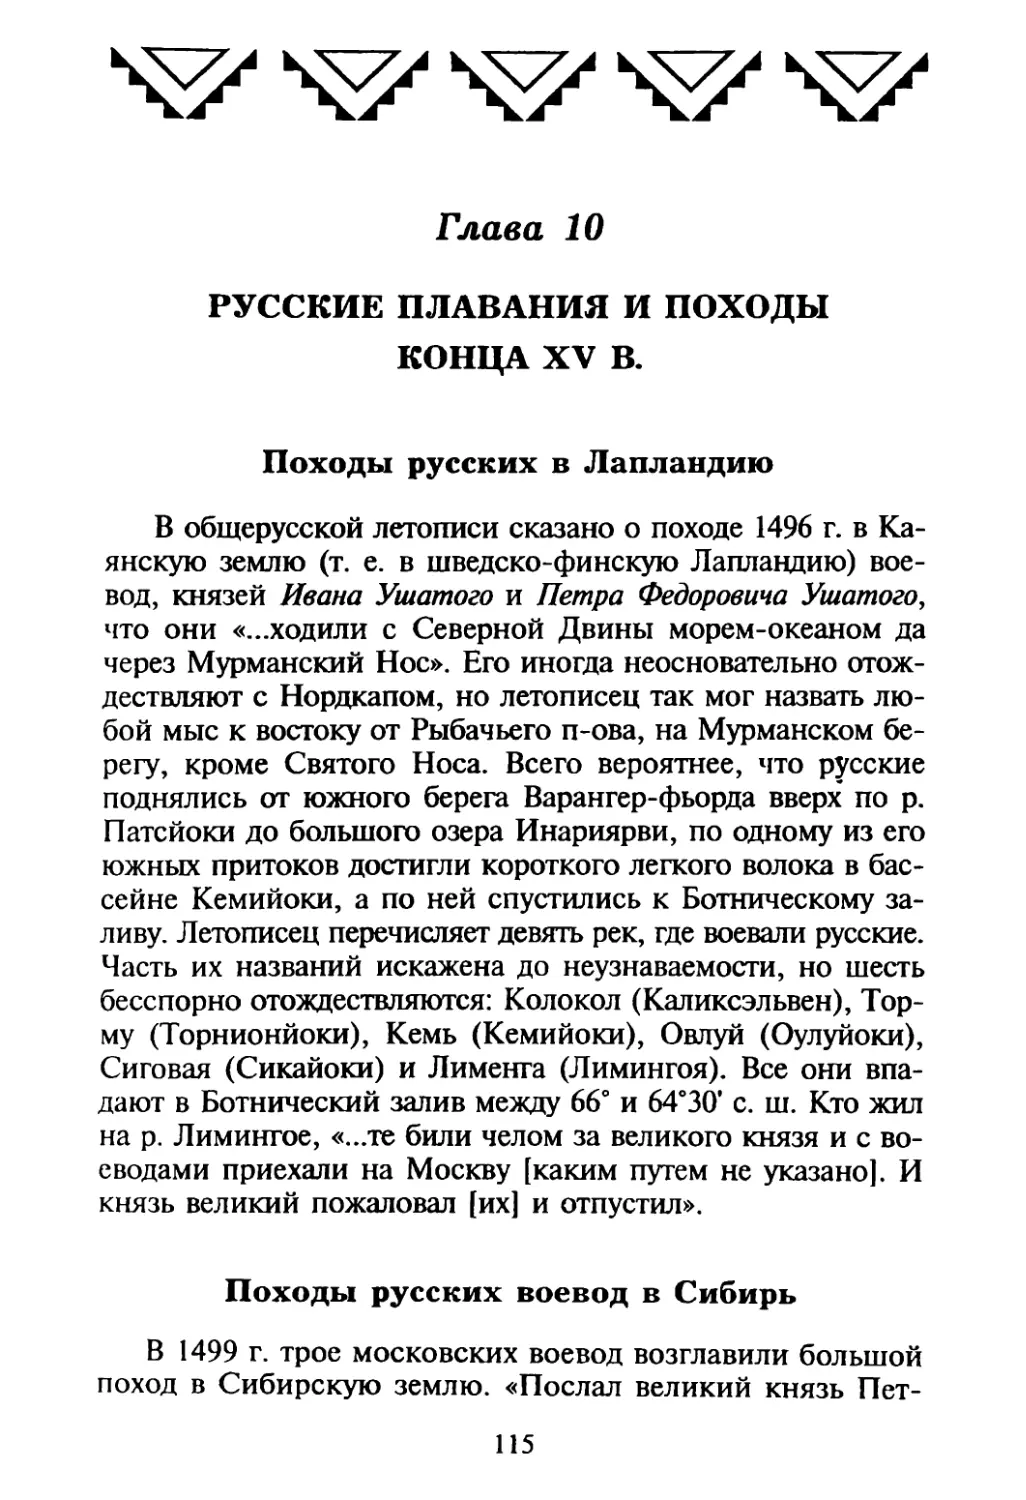 Глава 10. Русские плавания и походы конца XV в.
Походы русских воевод в Сибирь